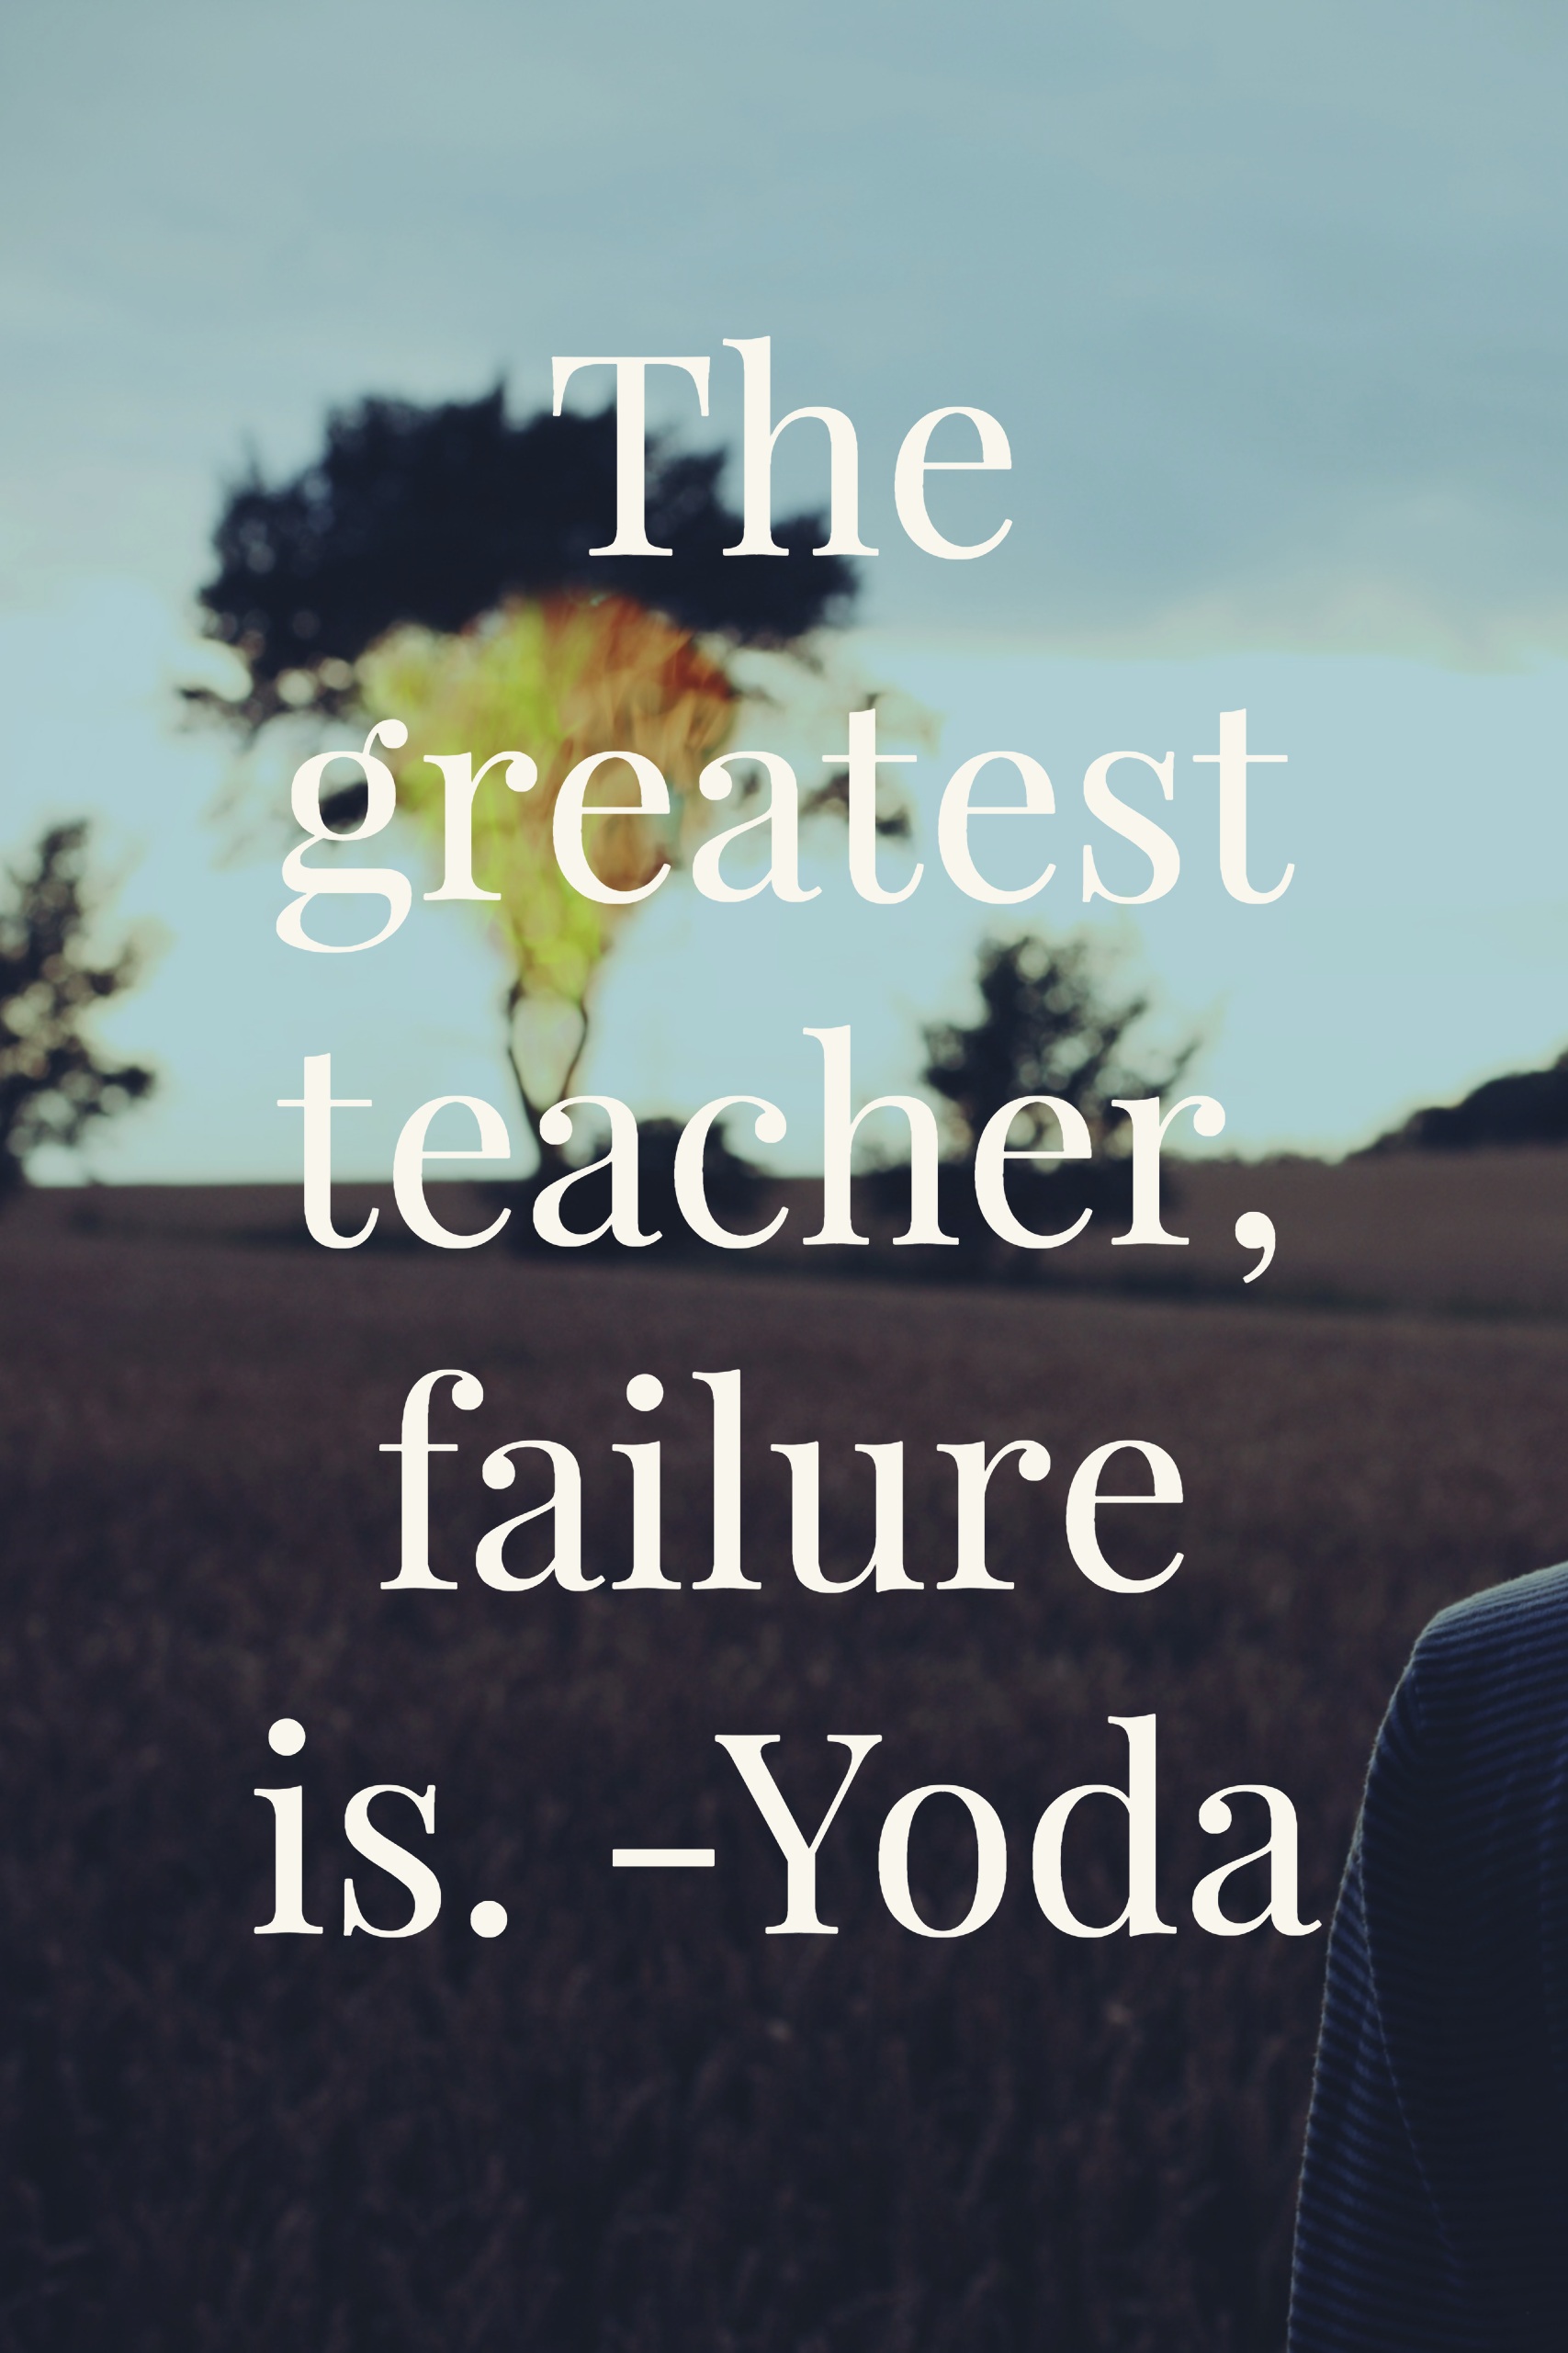 The greatest teacher, failure is.-yoda